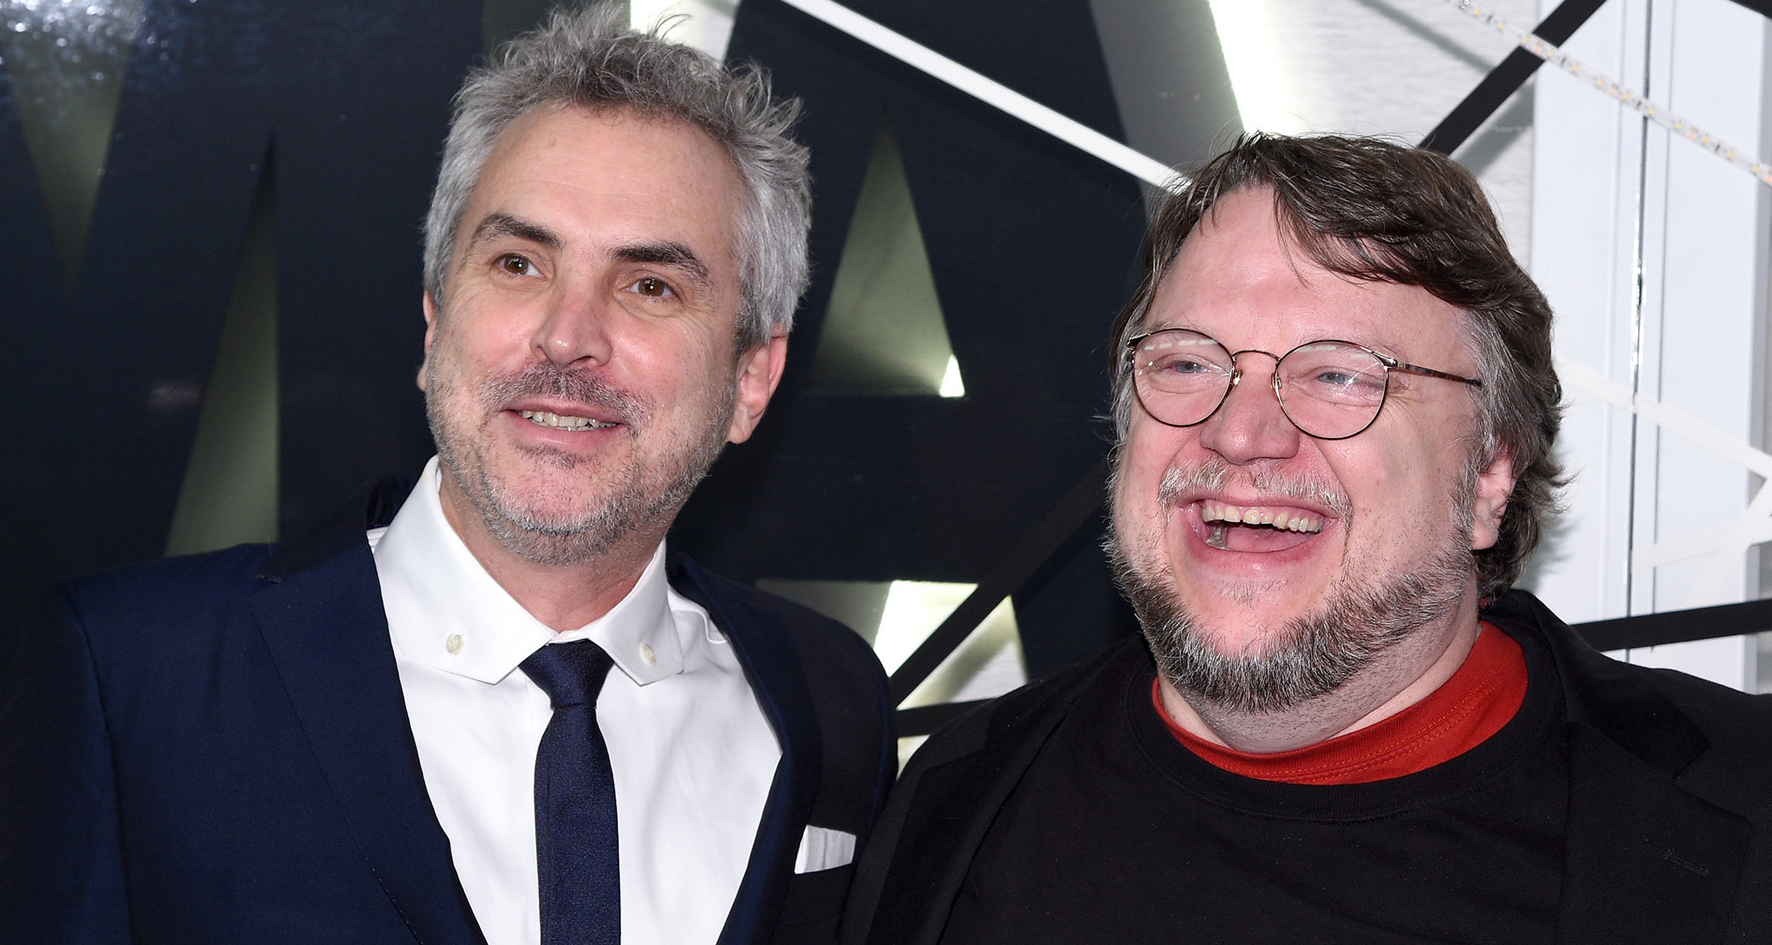 Del Toro y Cuarón protagonistas de Festival Lumiére de Francia